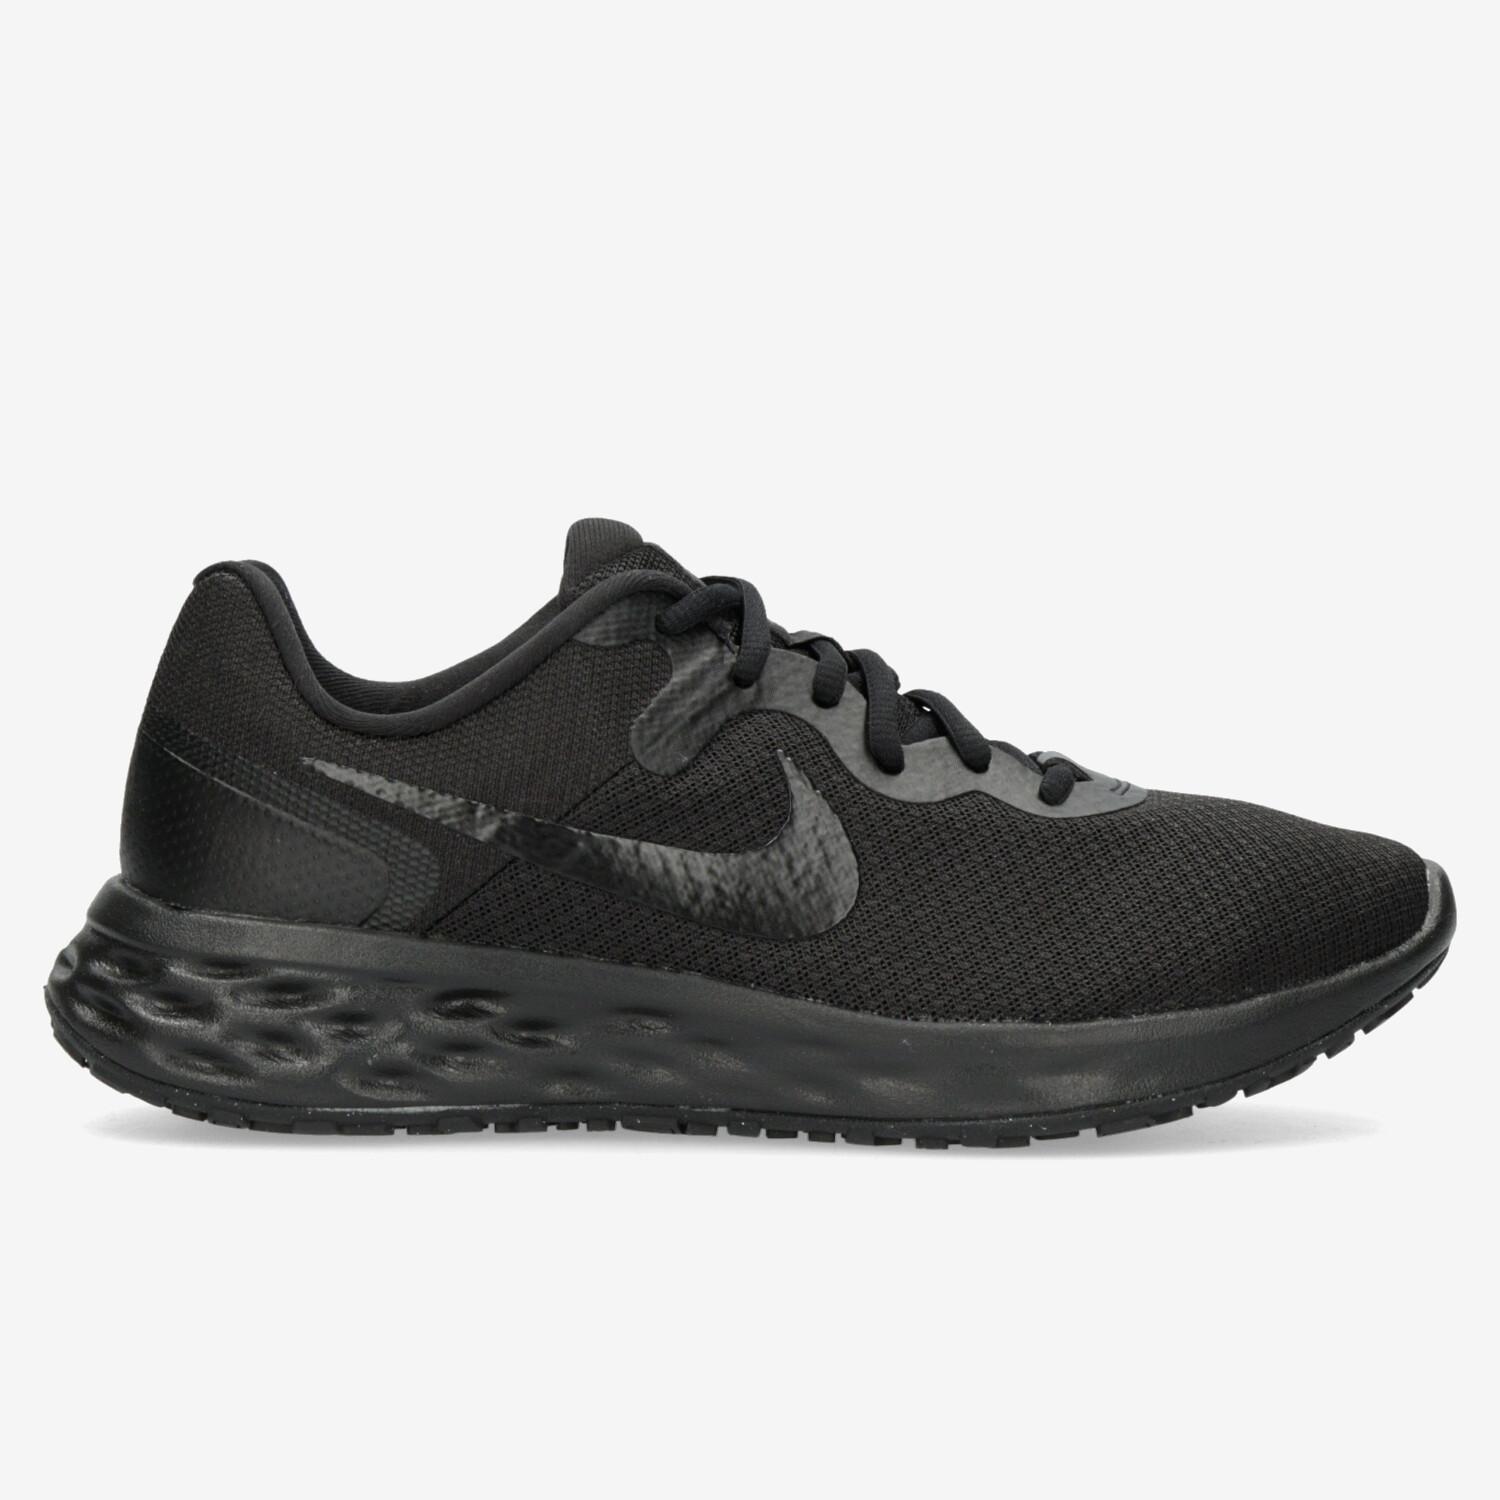 Gran cantidad de Jadeo receta Nike Revolution 6 - Negras - Zapatillas Running Hombre | Sprinter